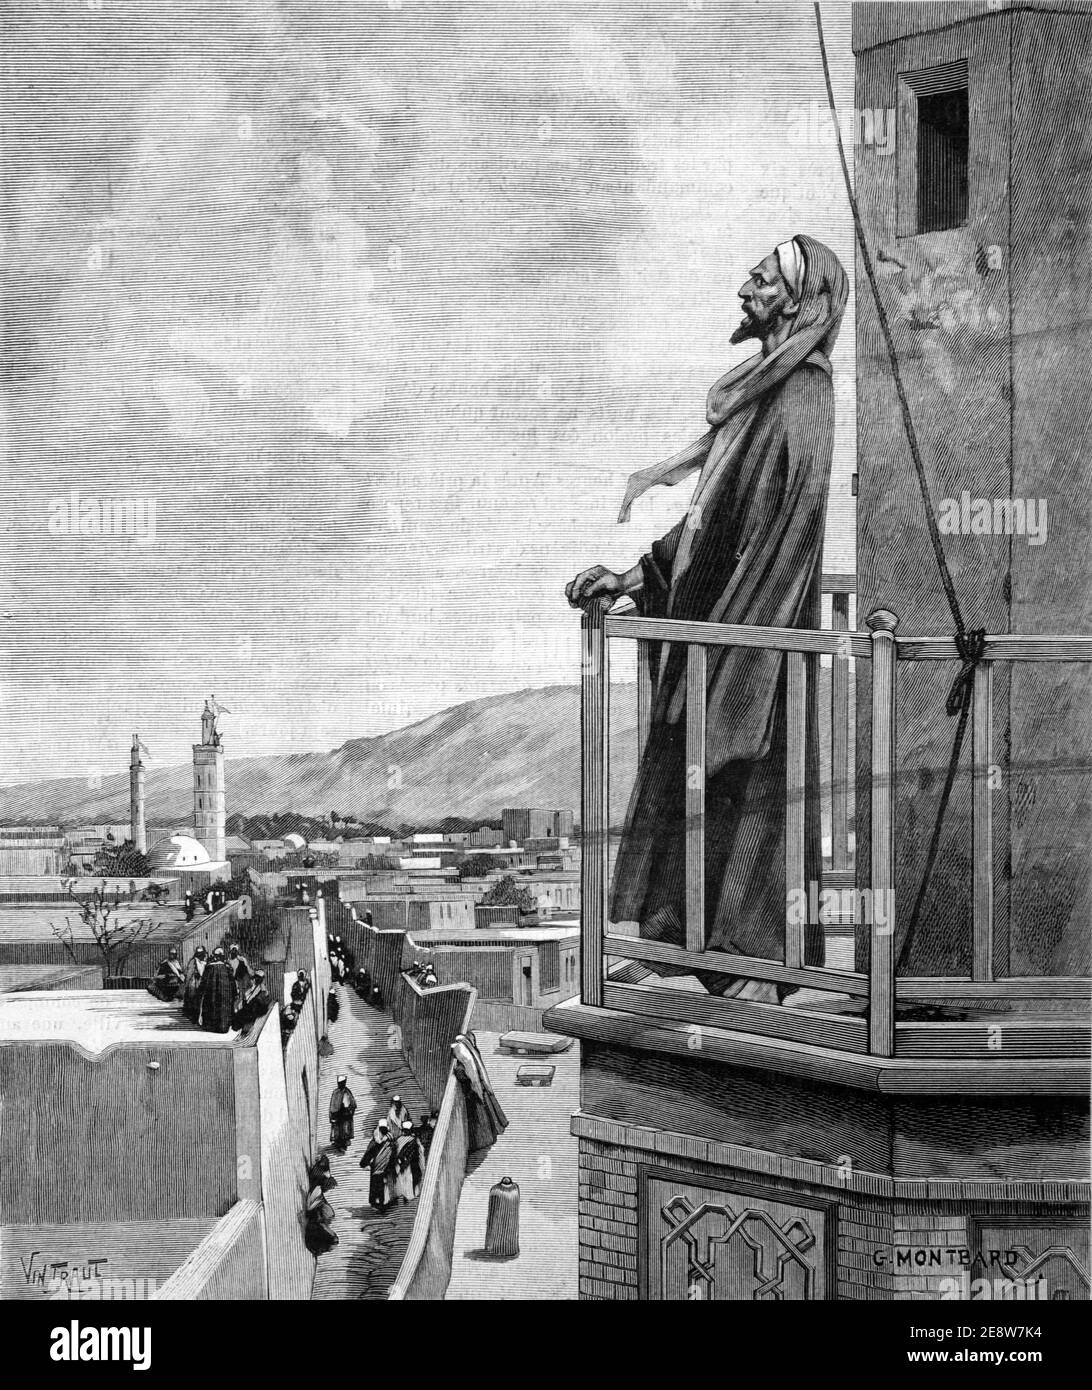 Muezzin Aufruf zum Gebet Muslim oder Islamischer Aufruf zum Gebet Während des Ramadan vom Minarett der Moschee Marokko 1900 Vintage Illustration Oder Gravieren Stockfoto